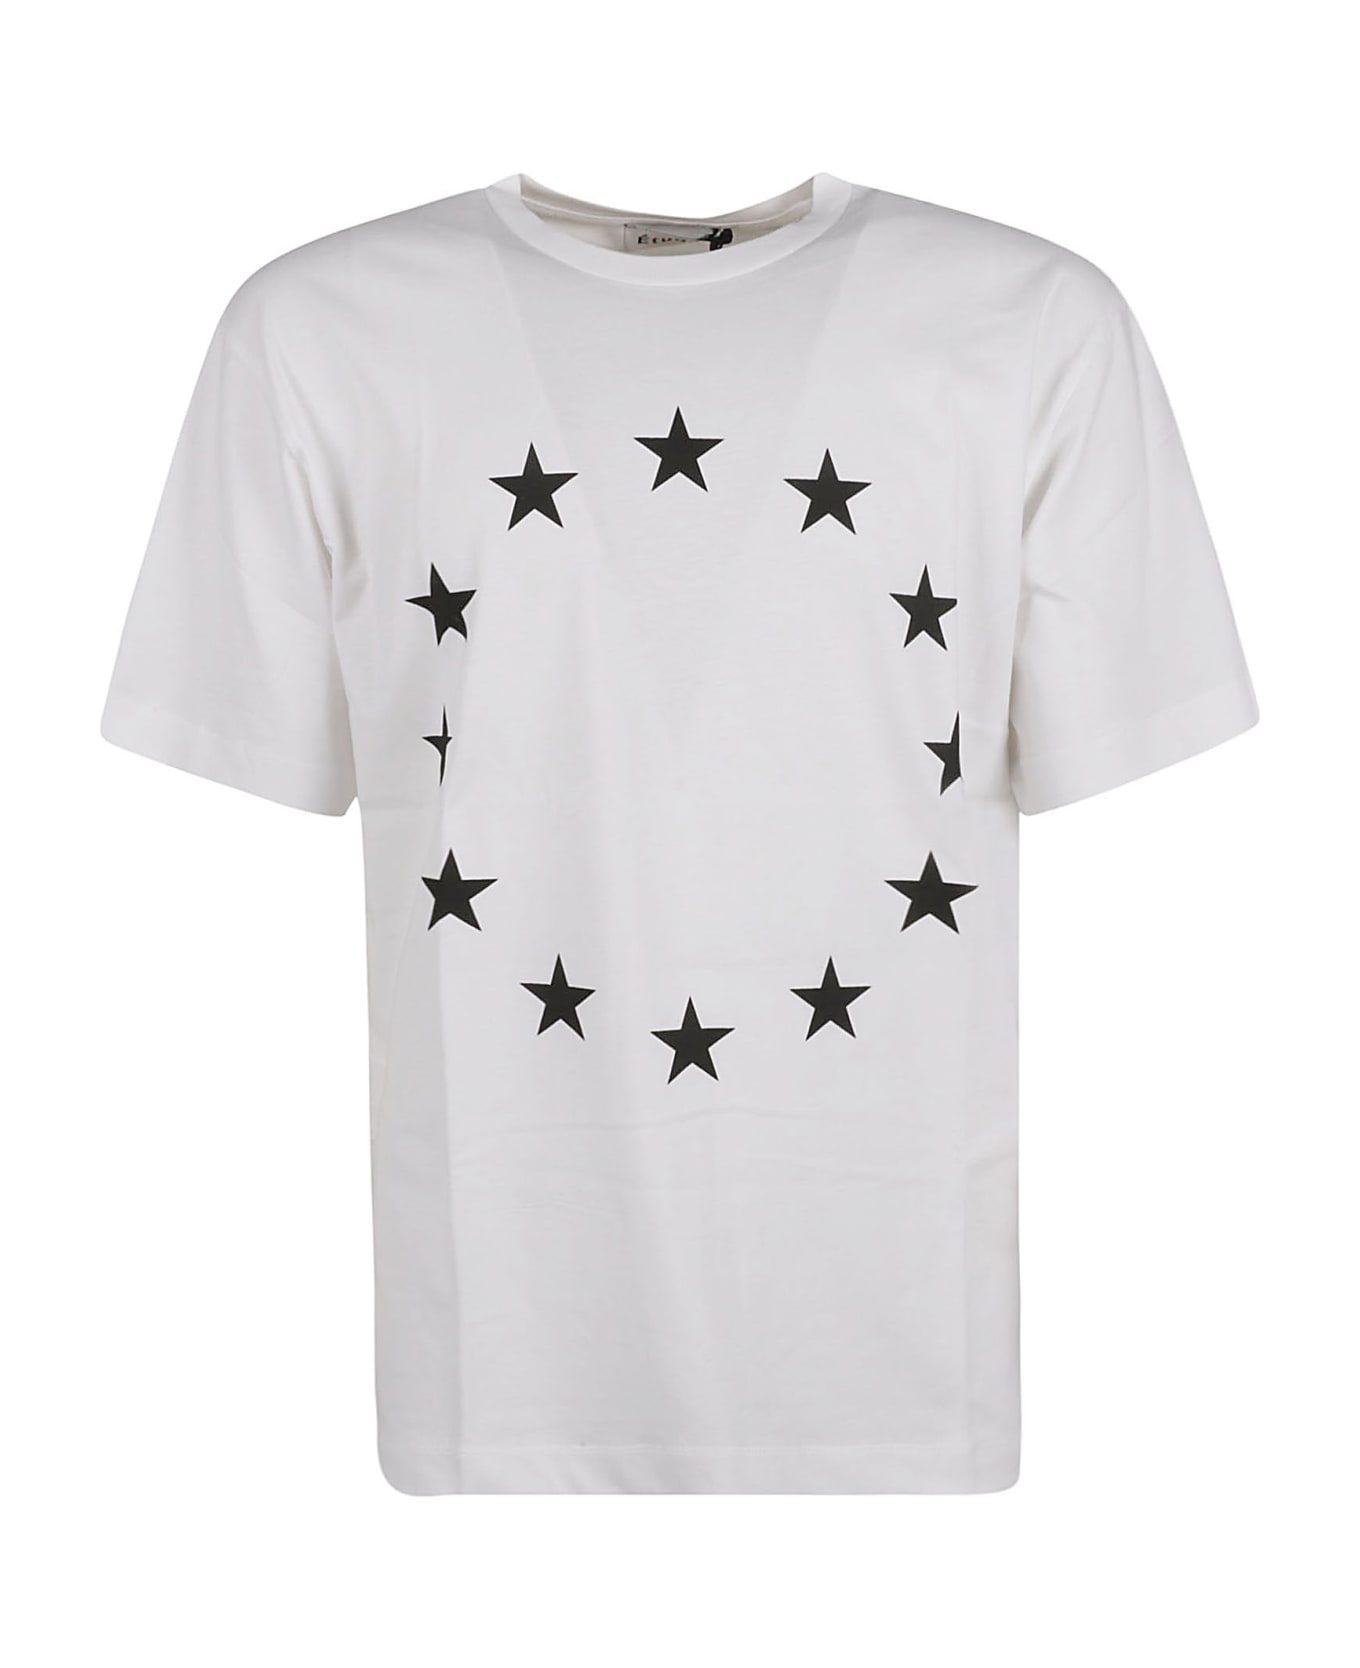 Études Round Star T-shirt - White シャツ